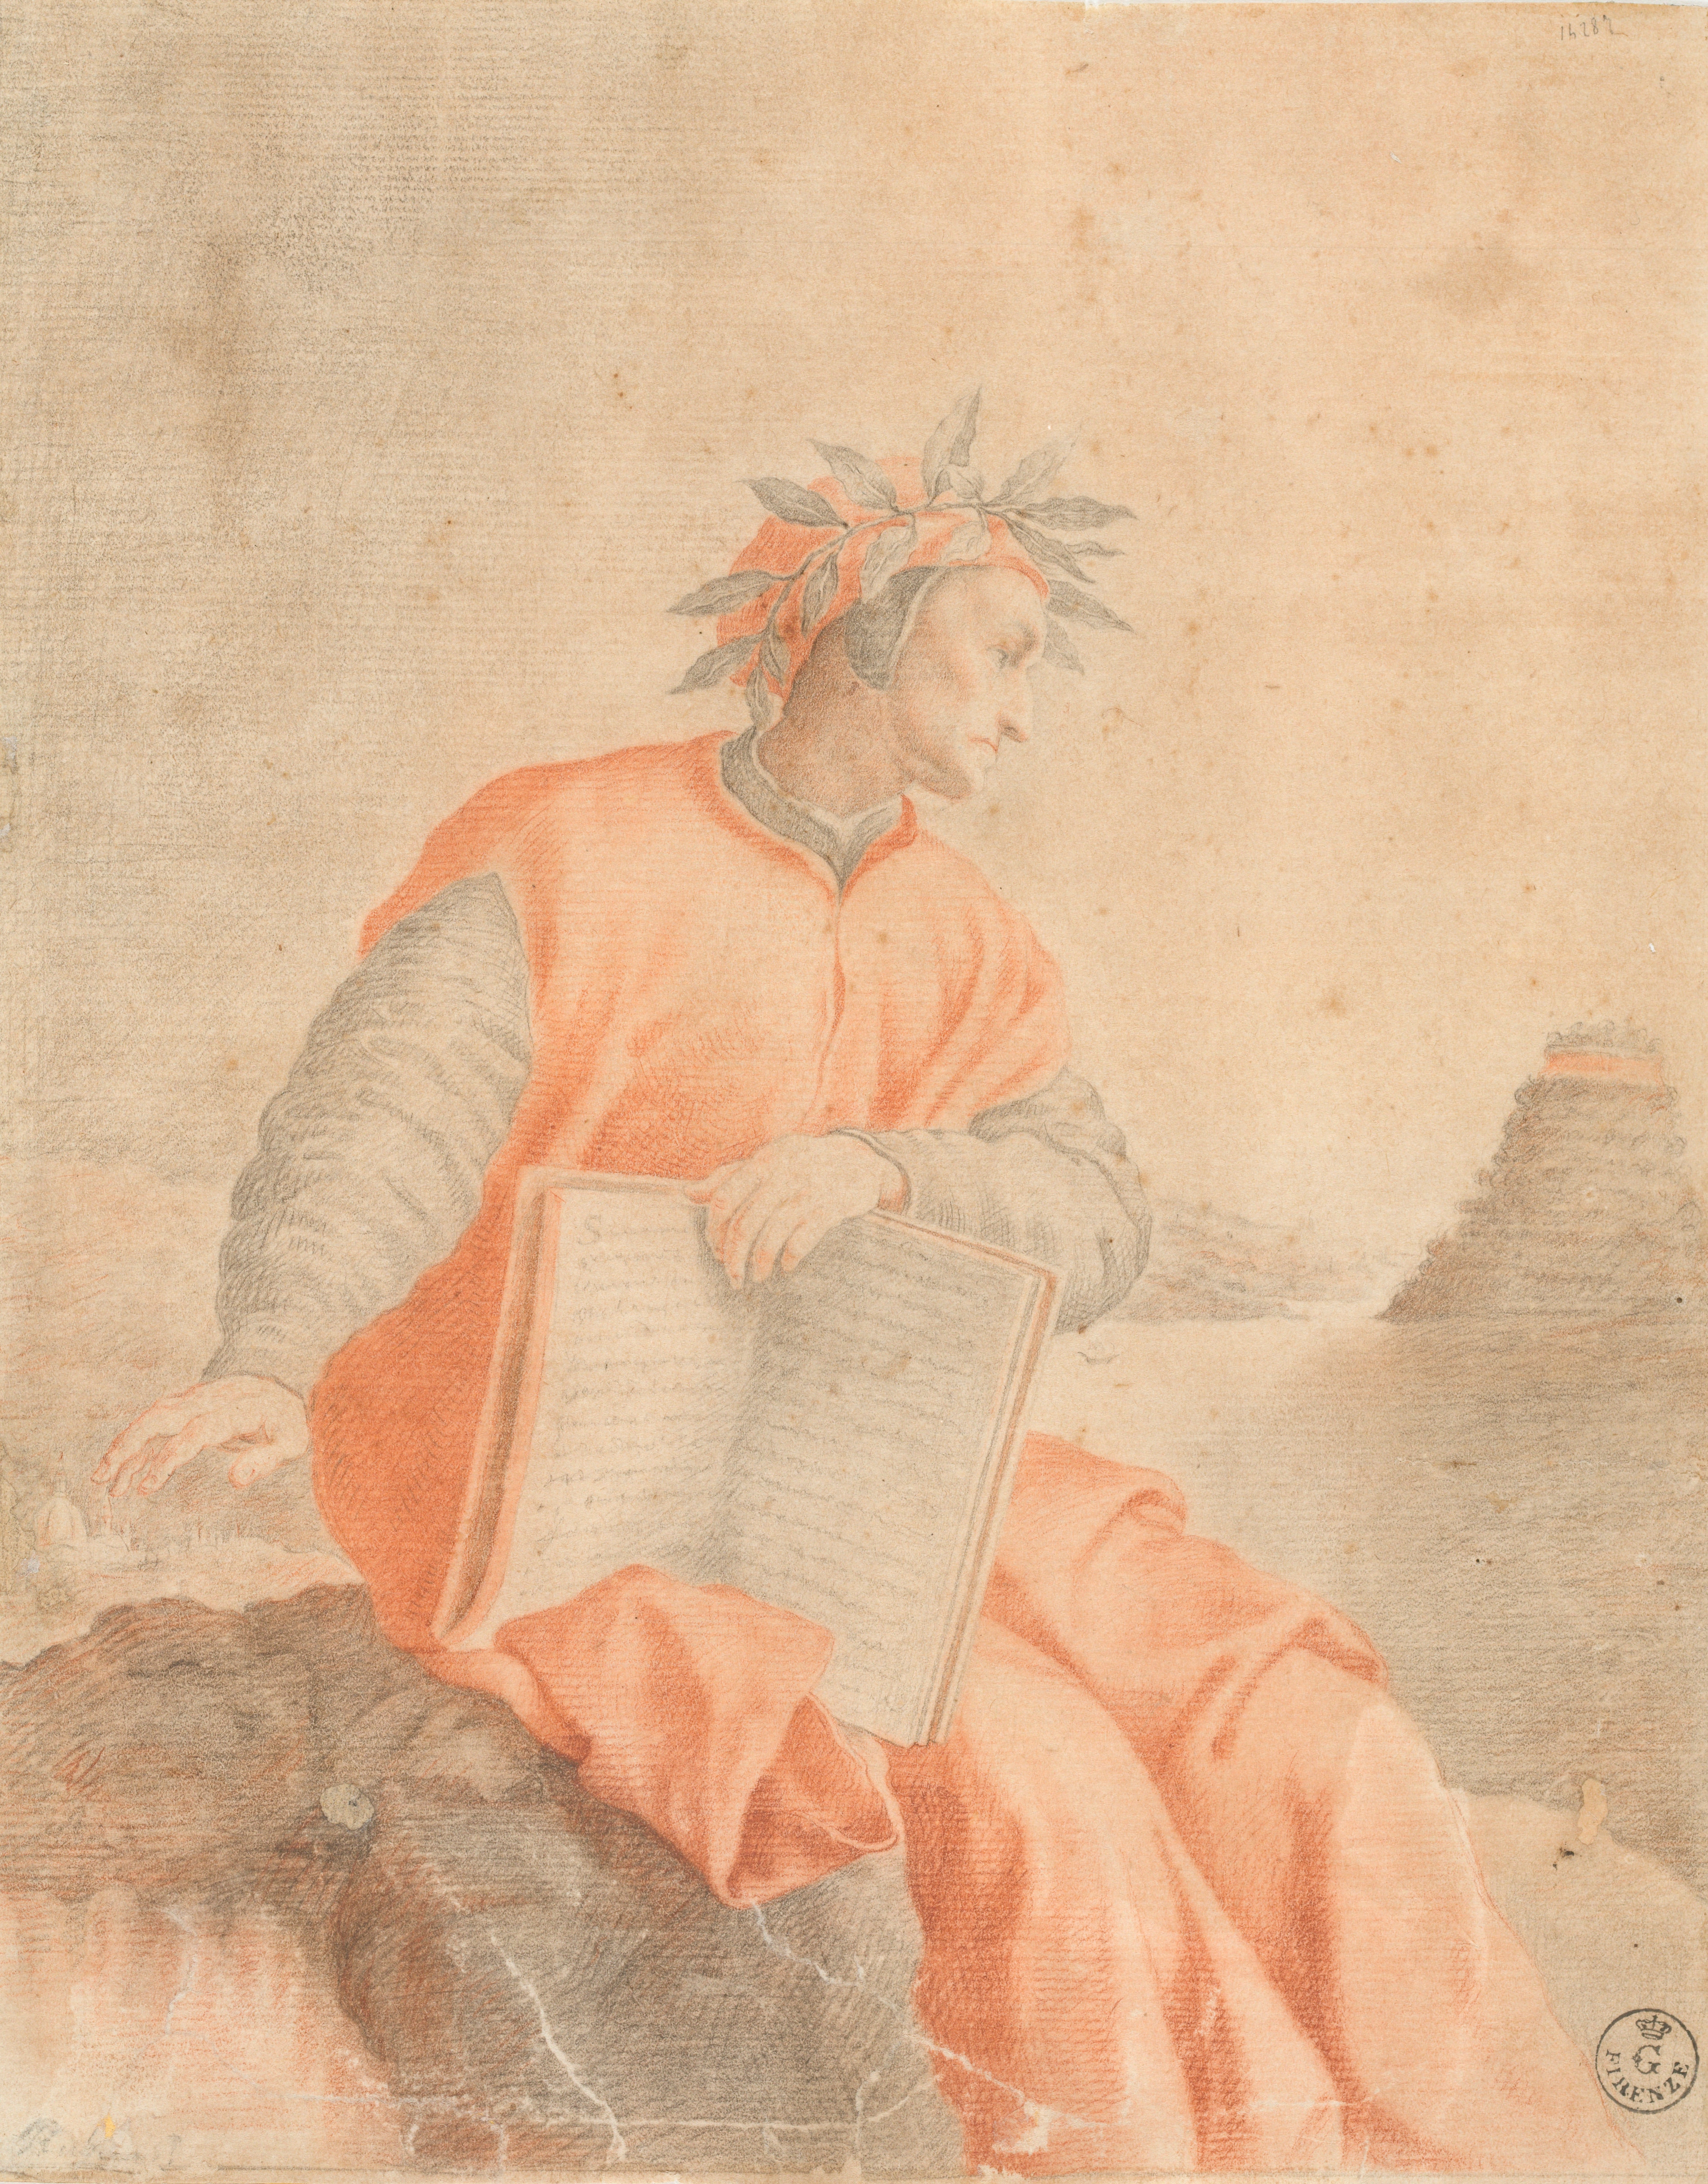 Ritratto di Dante di autore anonimo, frontespizio del volume della "Divina Commedia" illustrata da Federico Zuccari